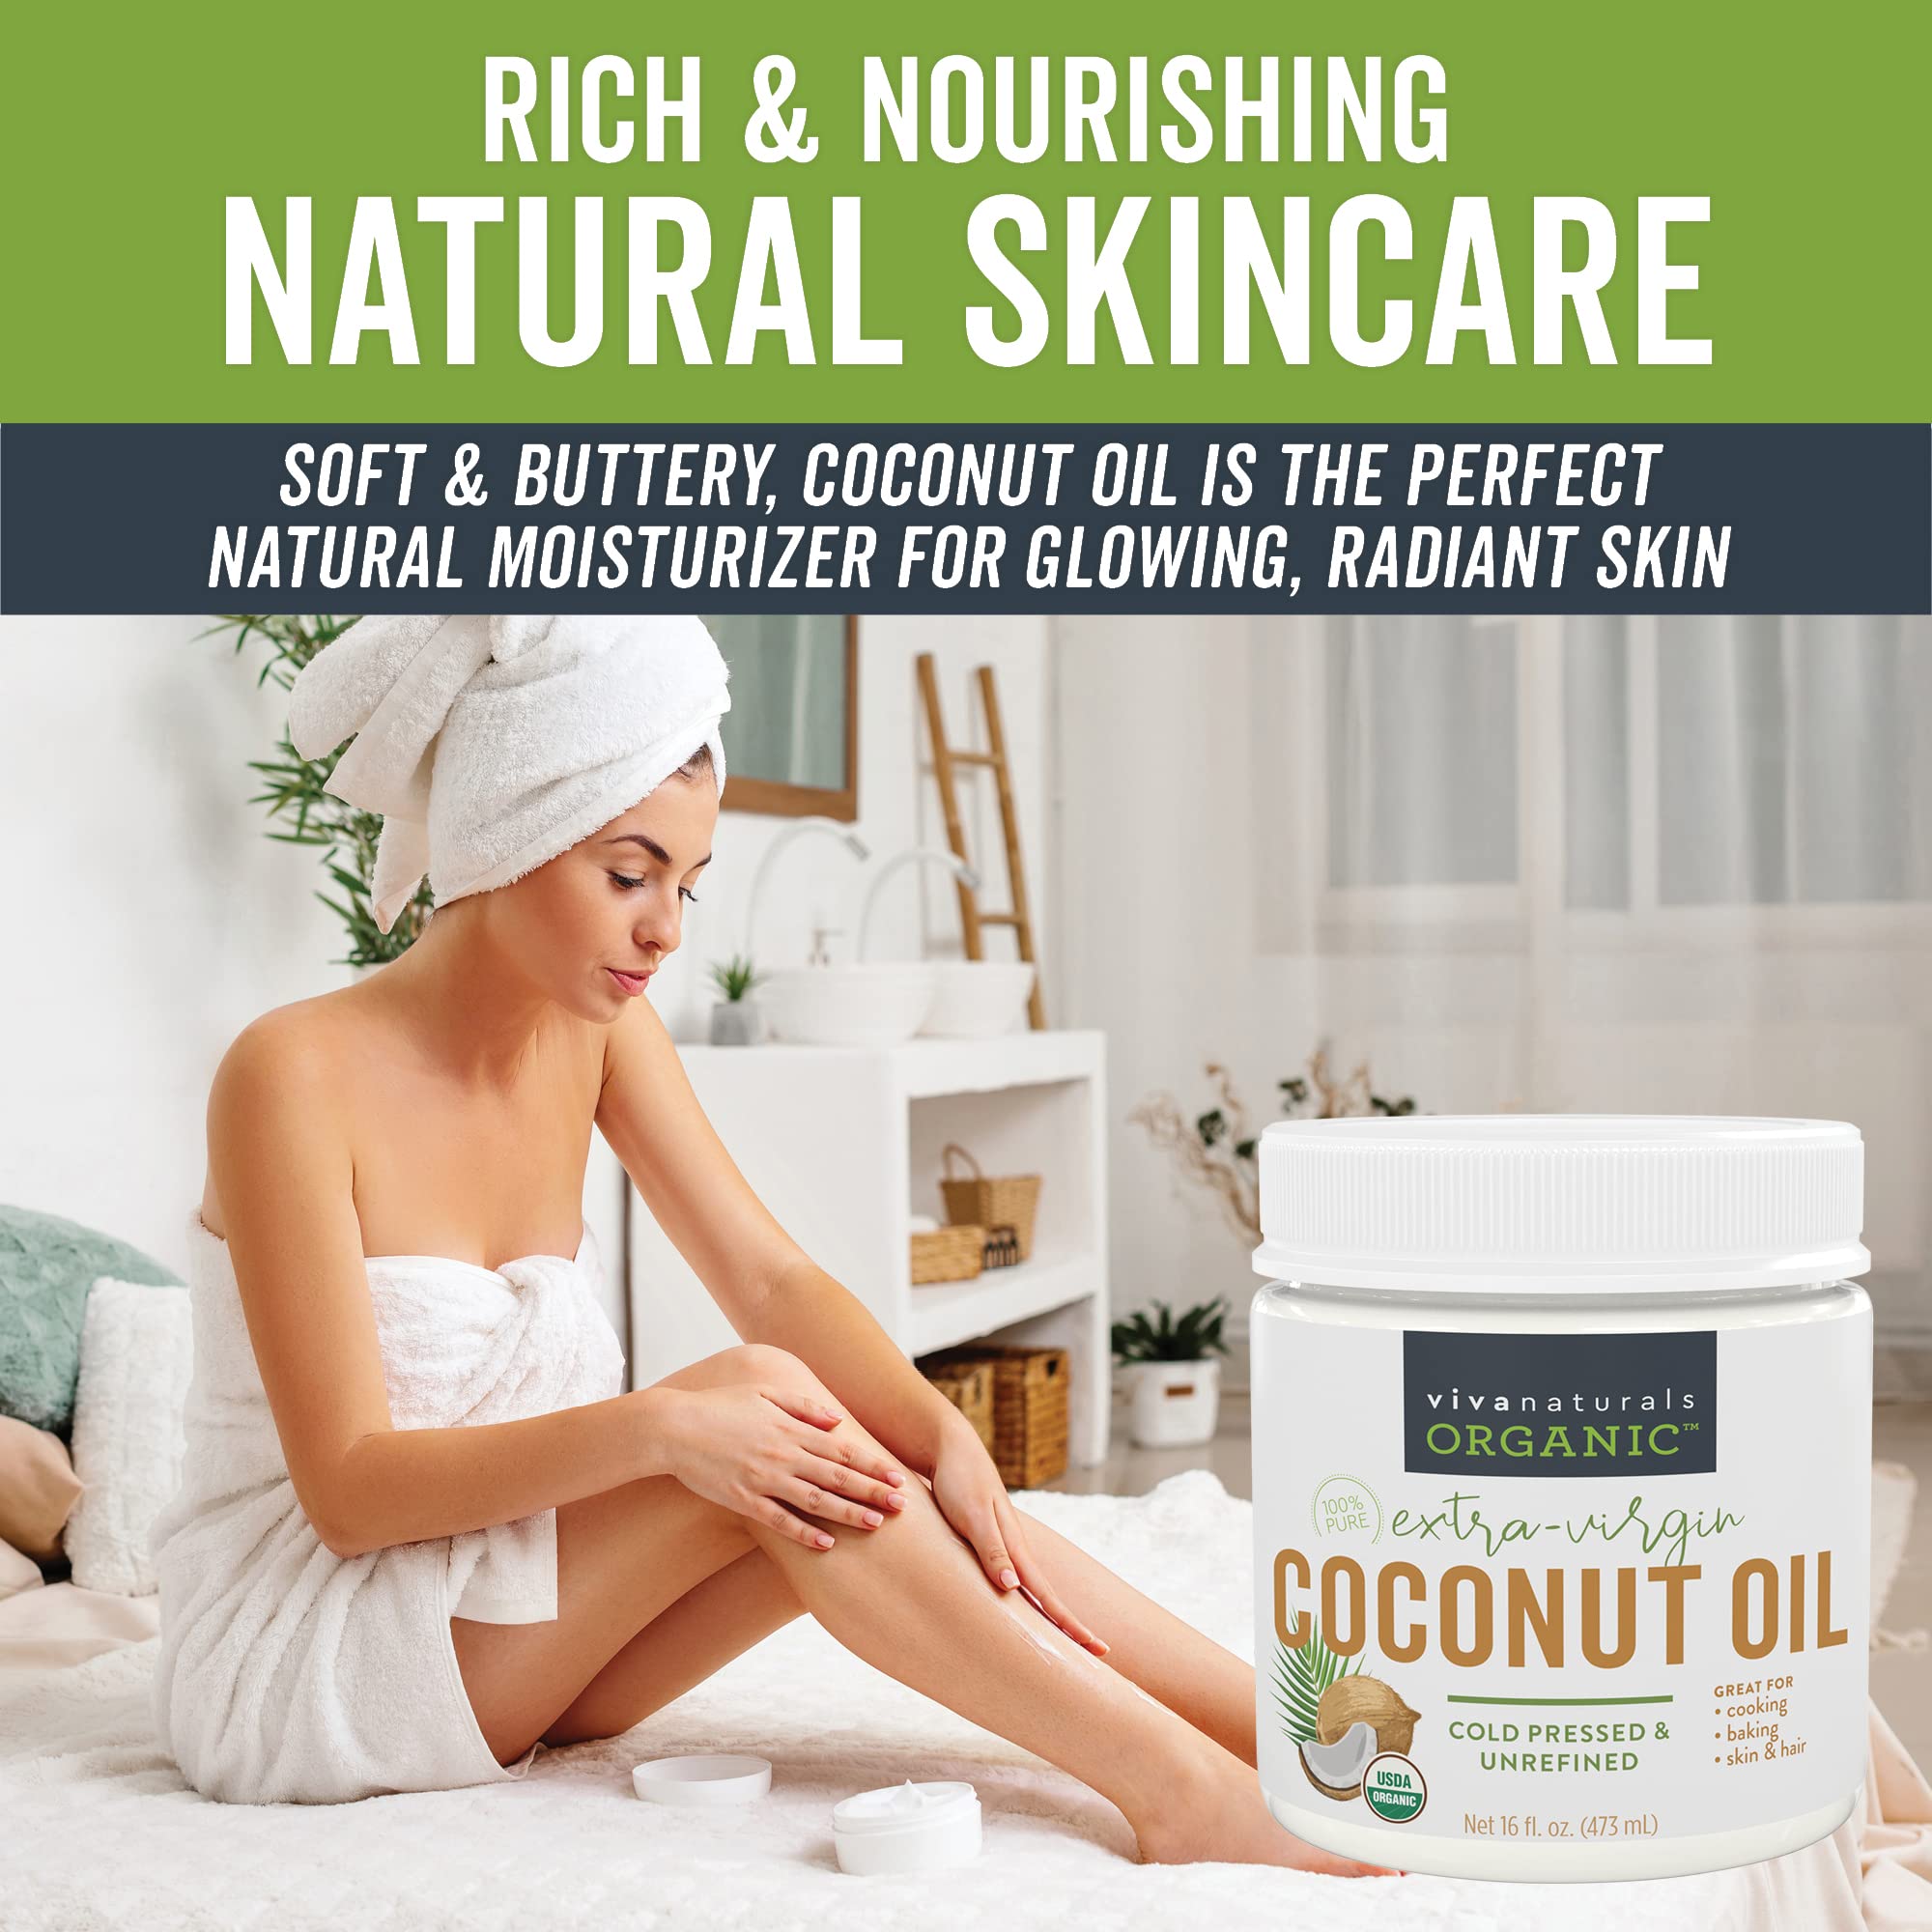 Viva Naturals Organic Extra Virgin Coconut Oil, 32 Oz & Organic Virgin Coconut Oil 16 ounces / 473 millilitres